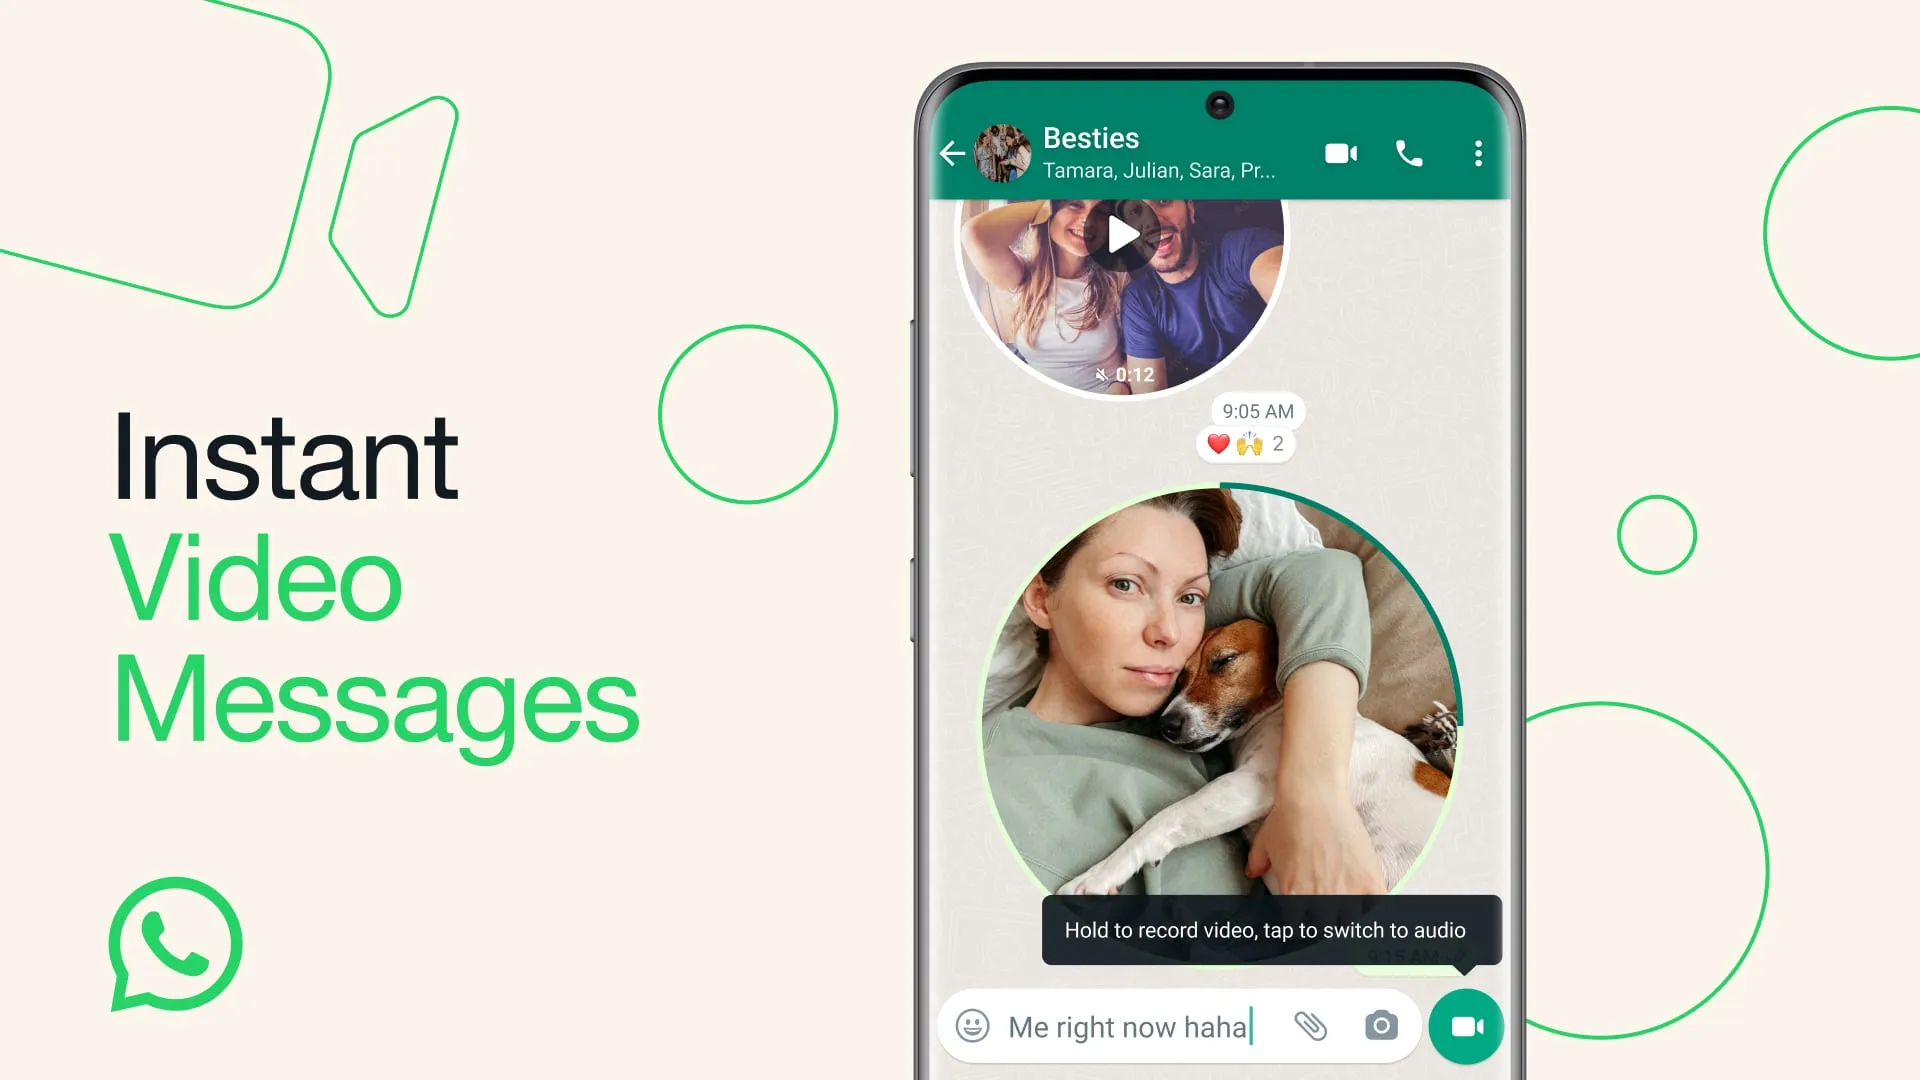 Маркетинговое изображение, демонстрирующее функцию мгновенных видеосообщений в WhatsApp.